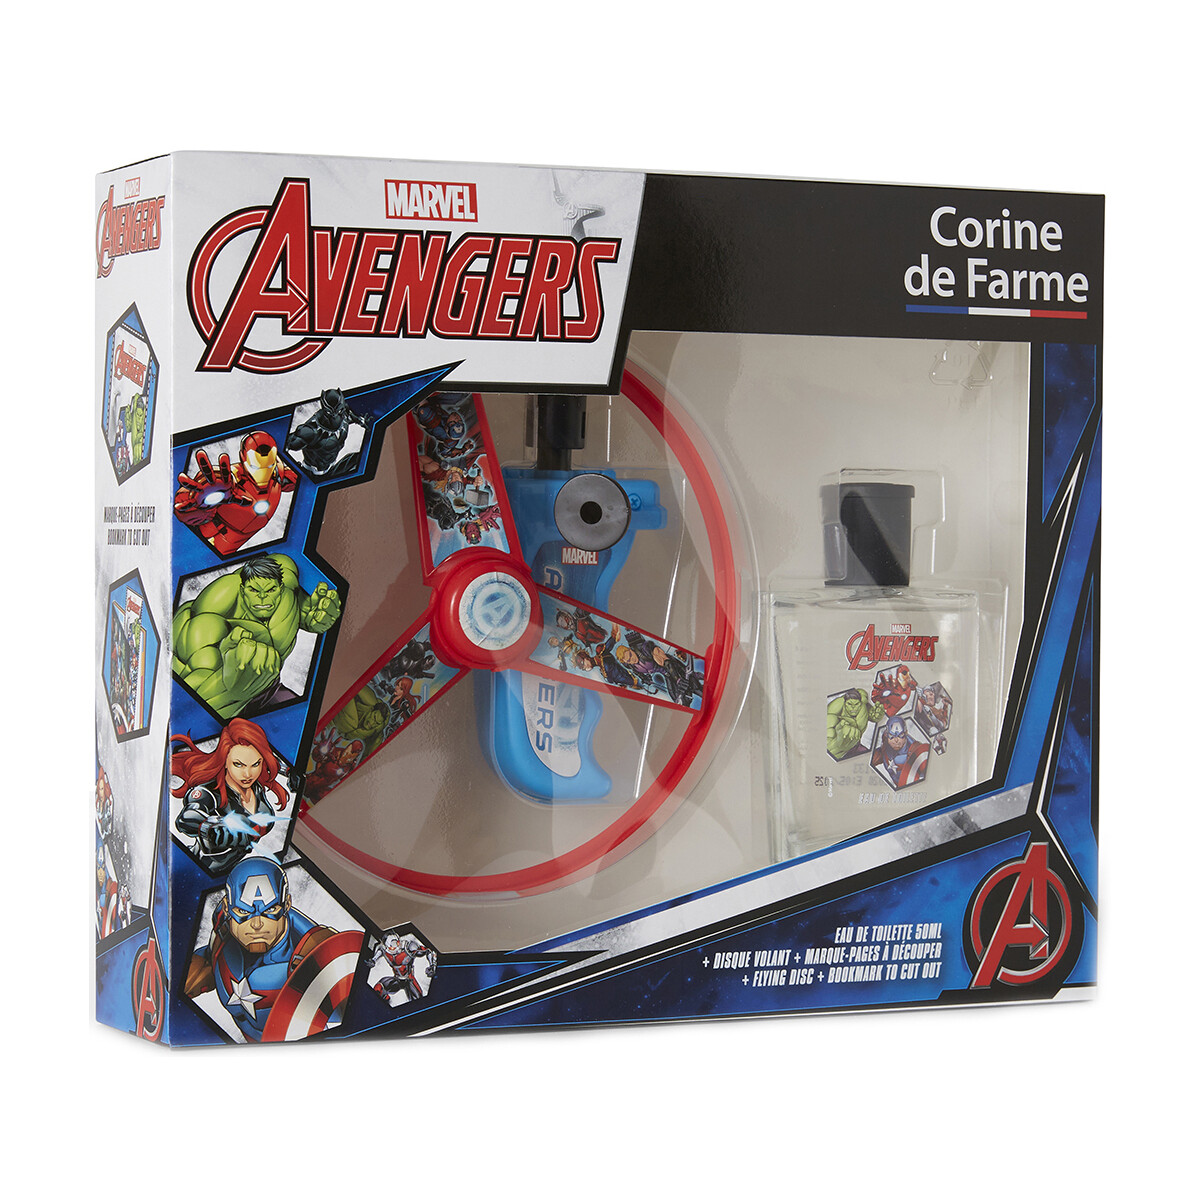 Corine De Farme Autres Coffret cadeau Avengers Marvel mldisVRj